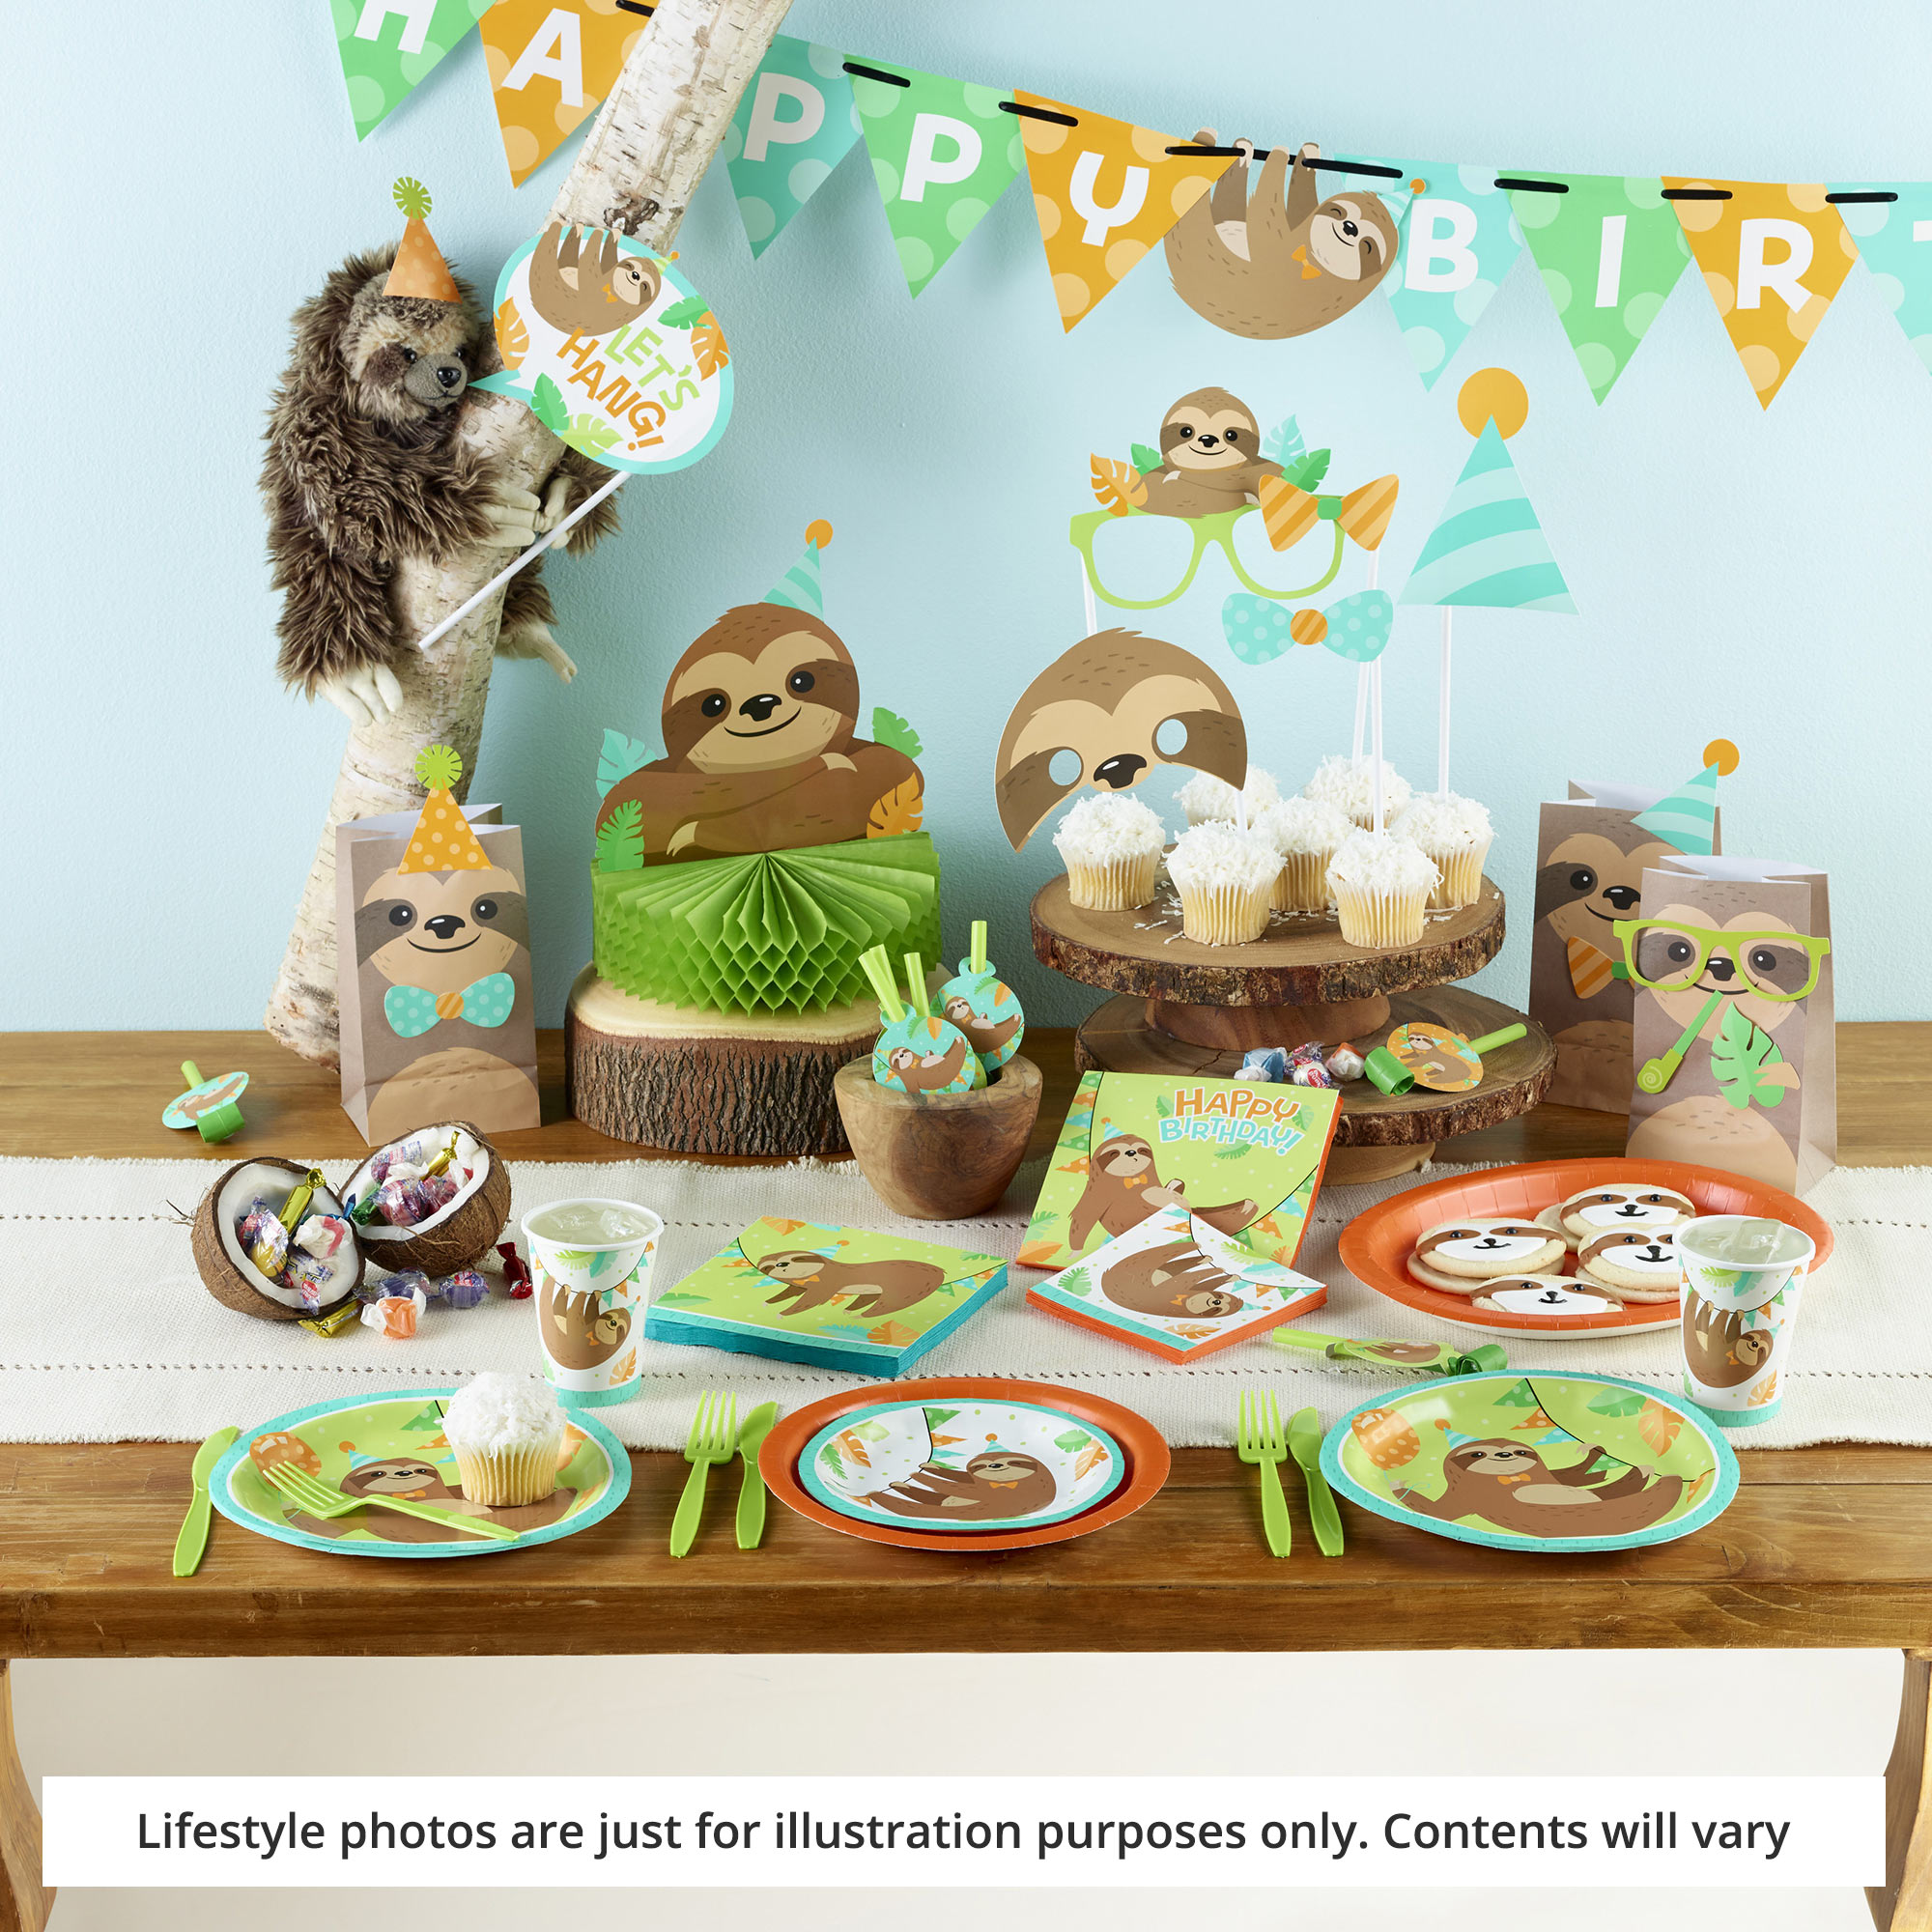 sloth-birthday